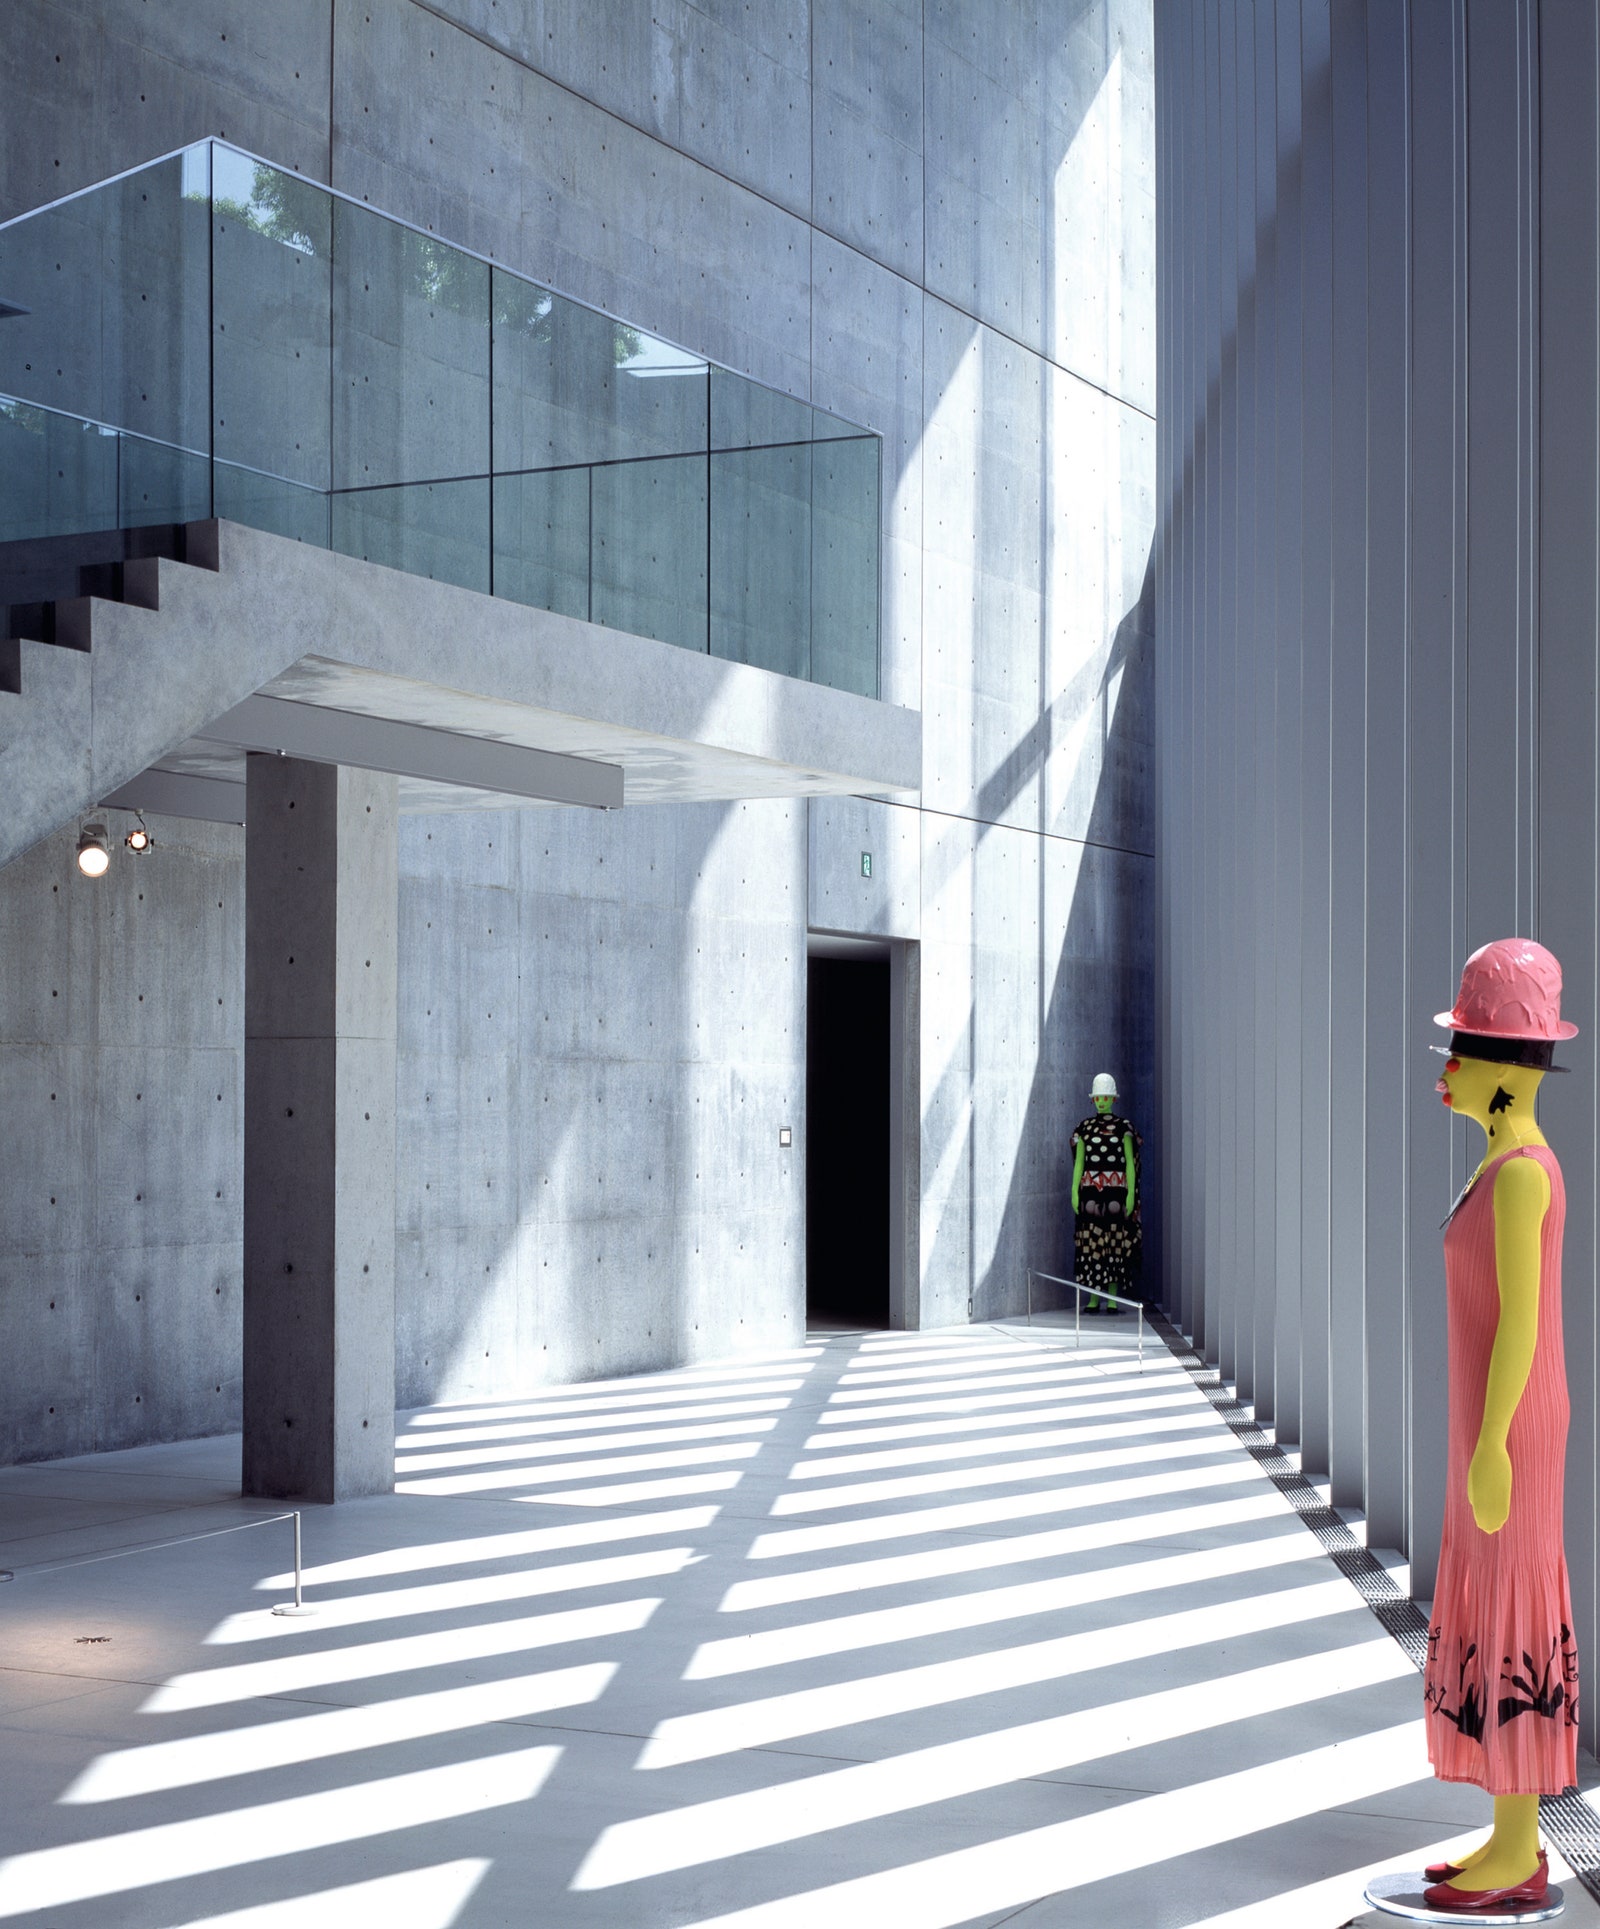 Музей Design Sight в Токио построенный по проекту Тадао Андо в 2007 году.